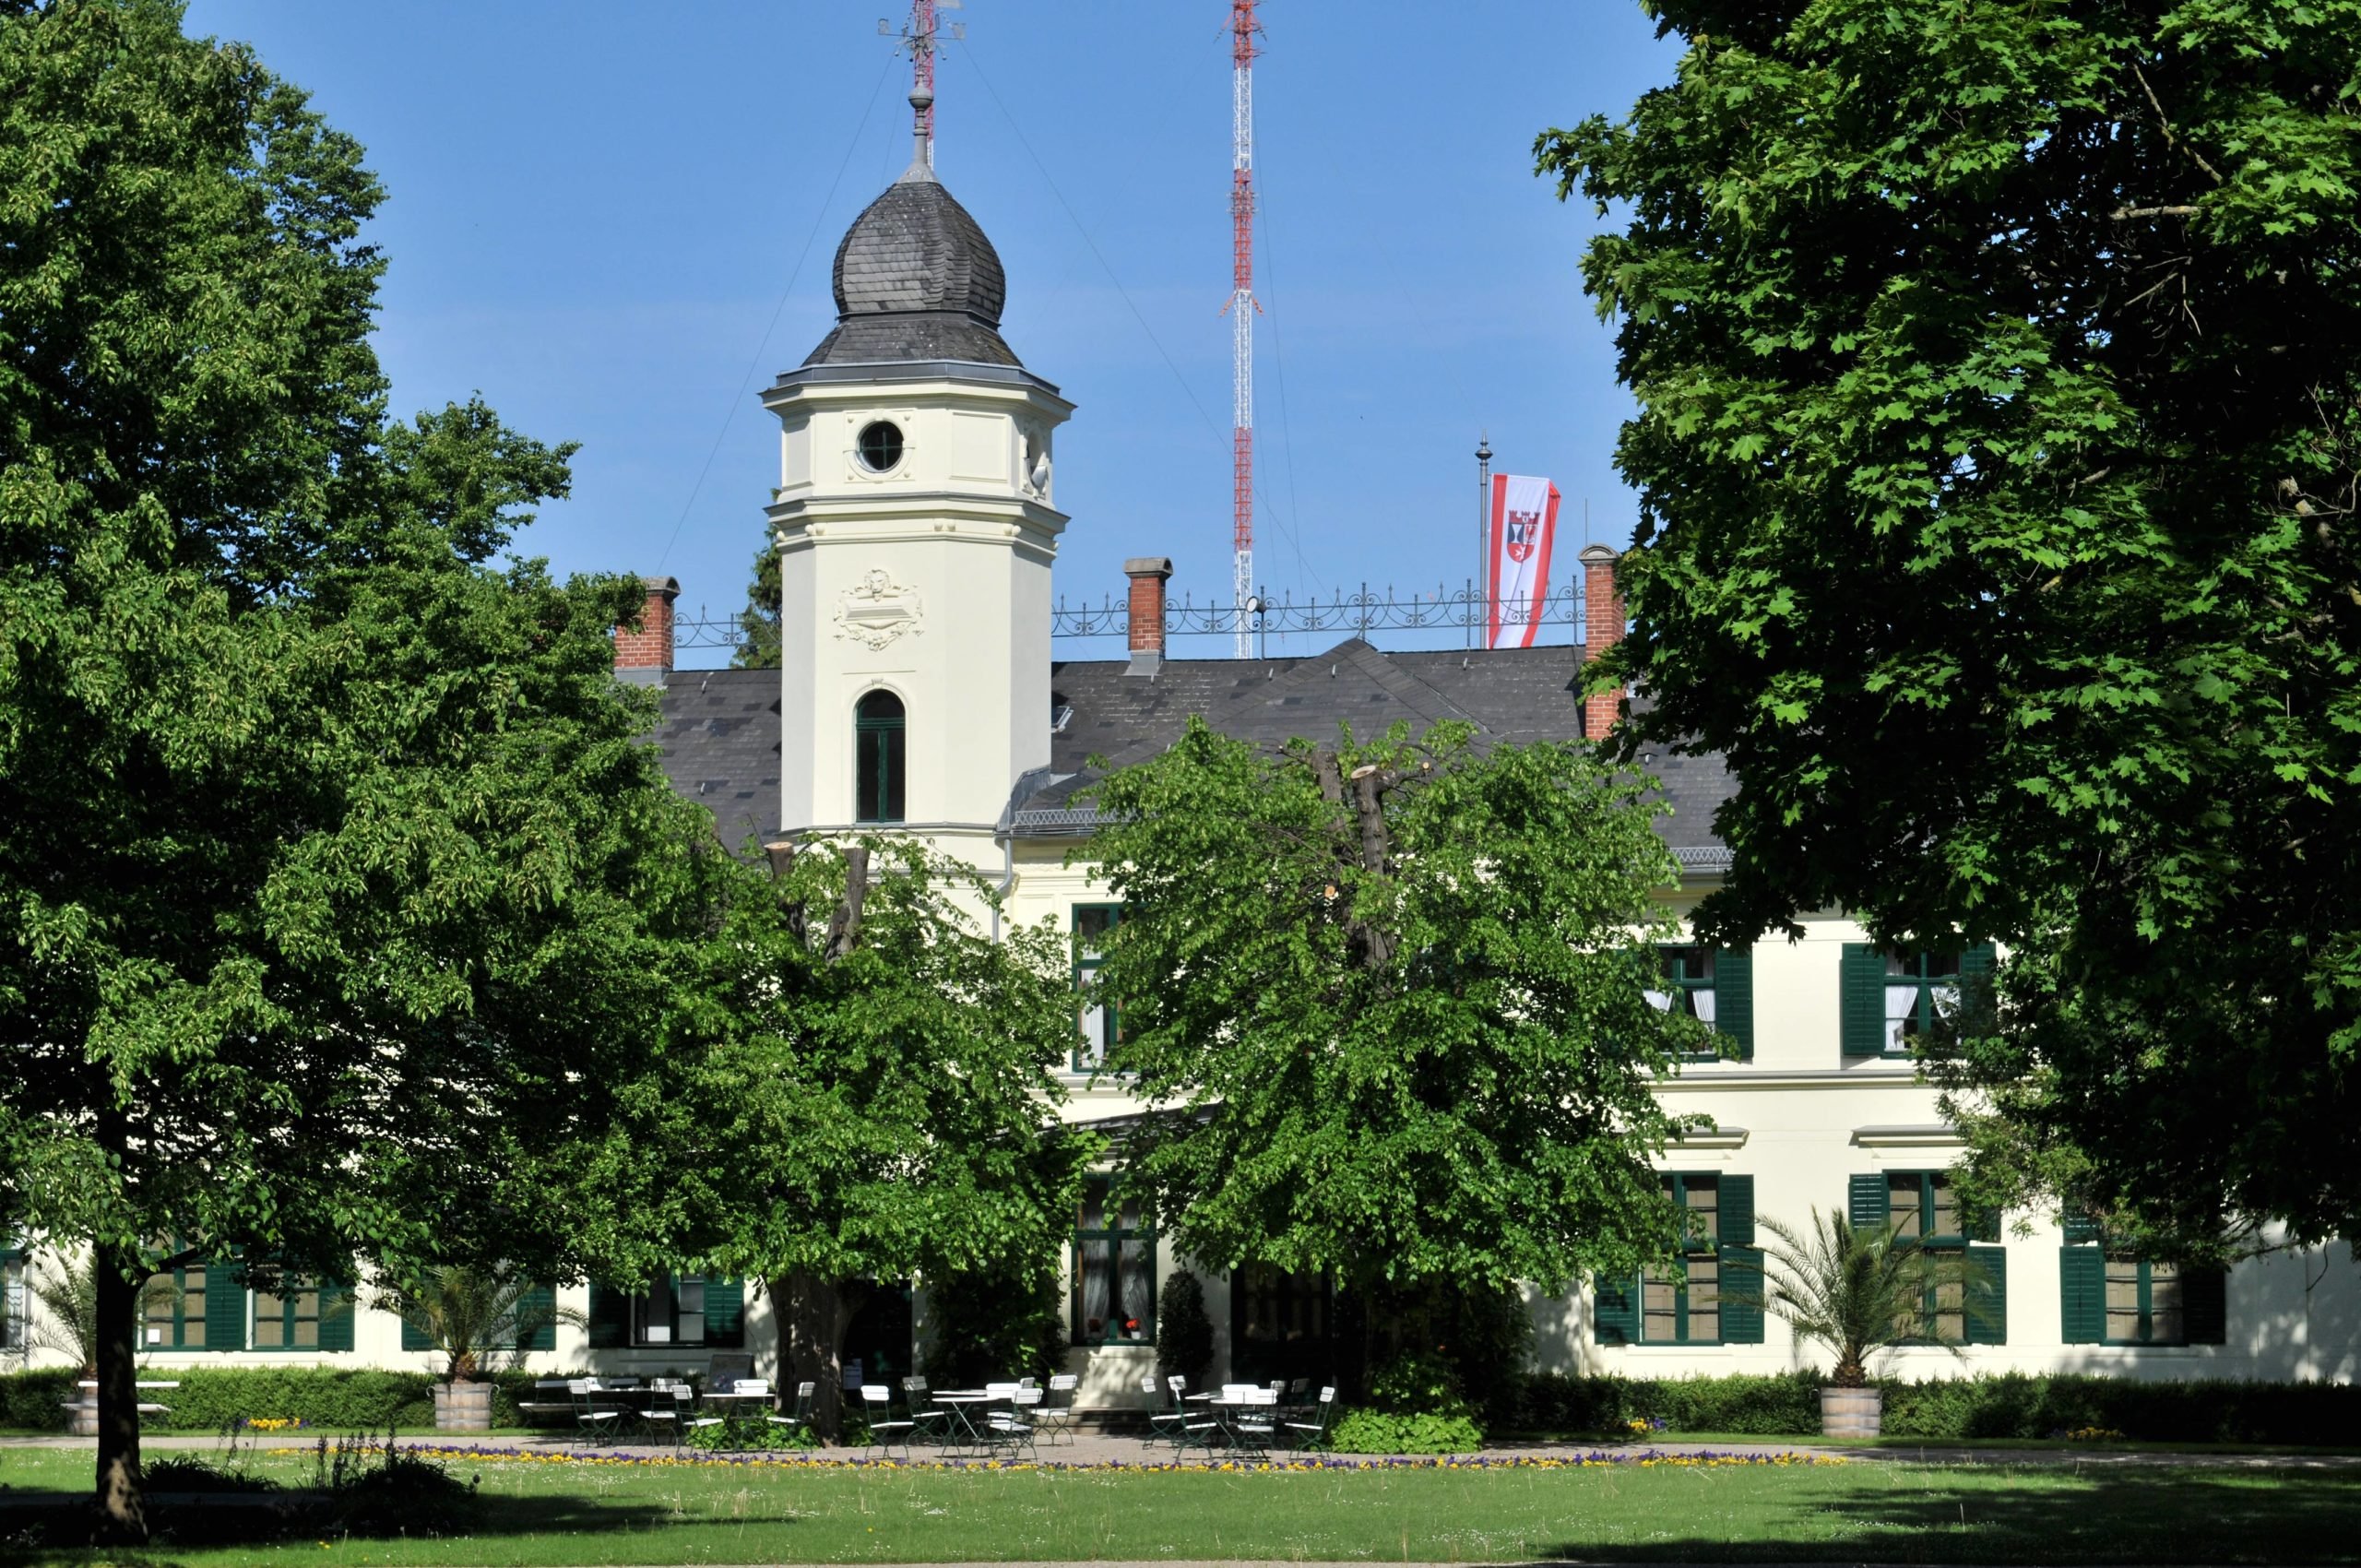 Museen in Neukölln: Das Schloss Britz blickt in der Dauerausstellung auf die Gründerzeit zurück. Foto: Imago/Schöning